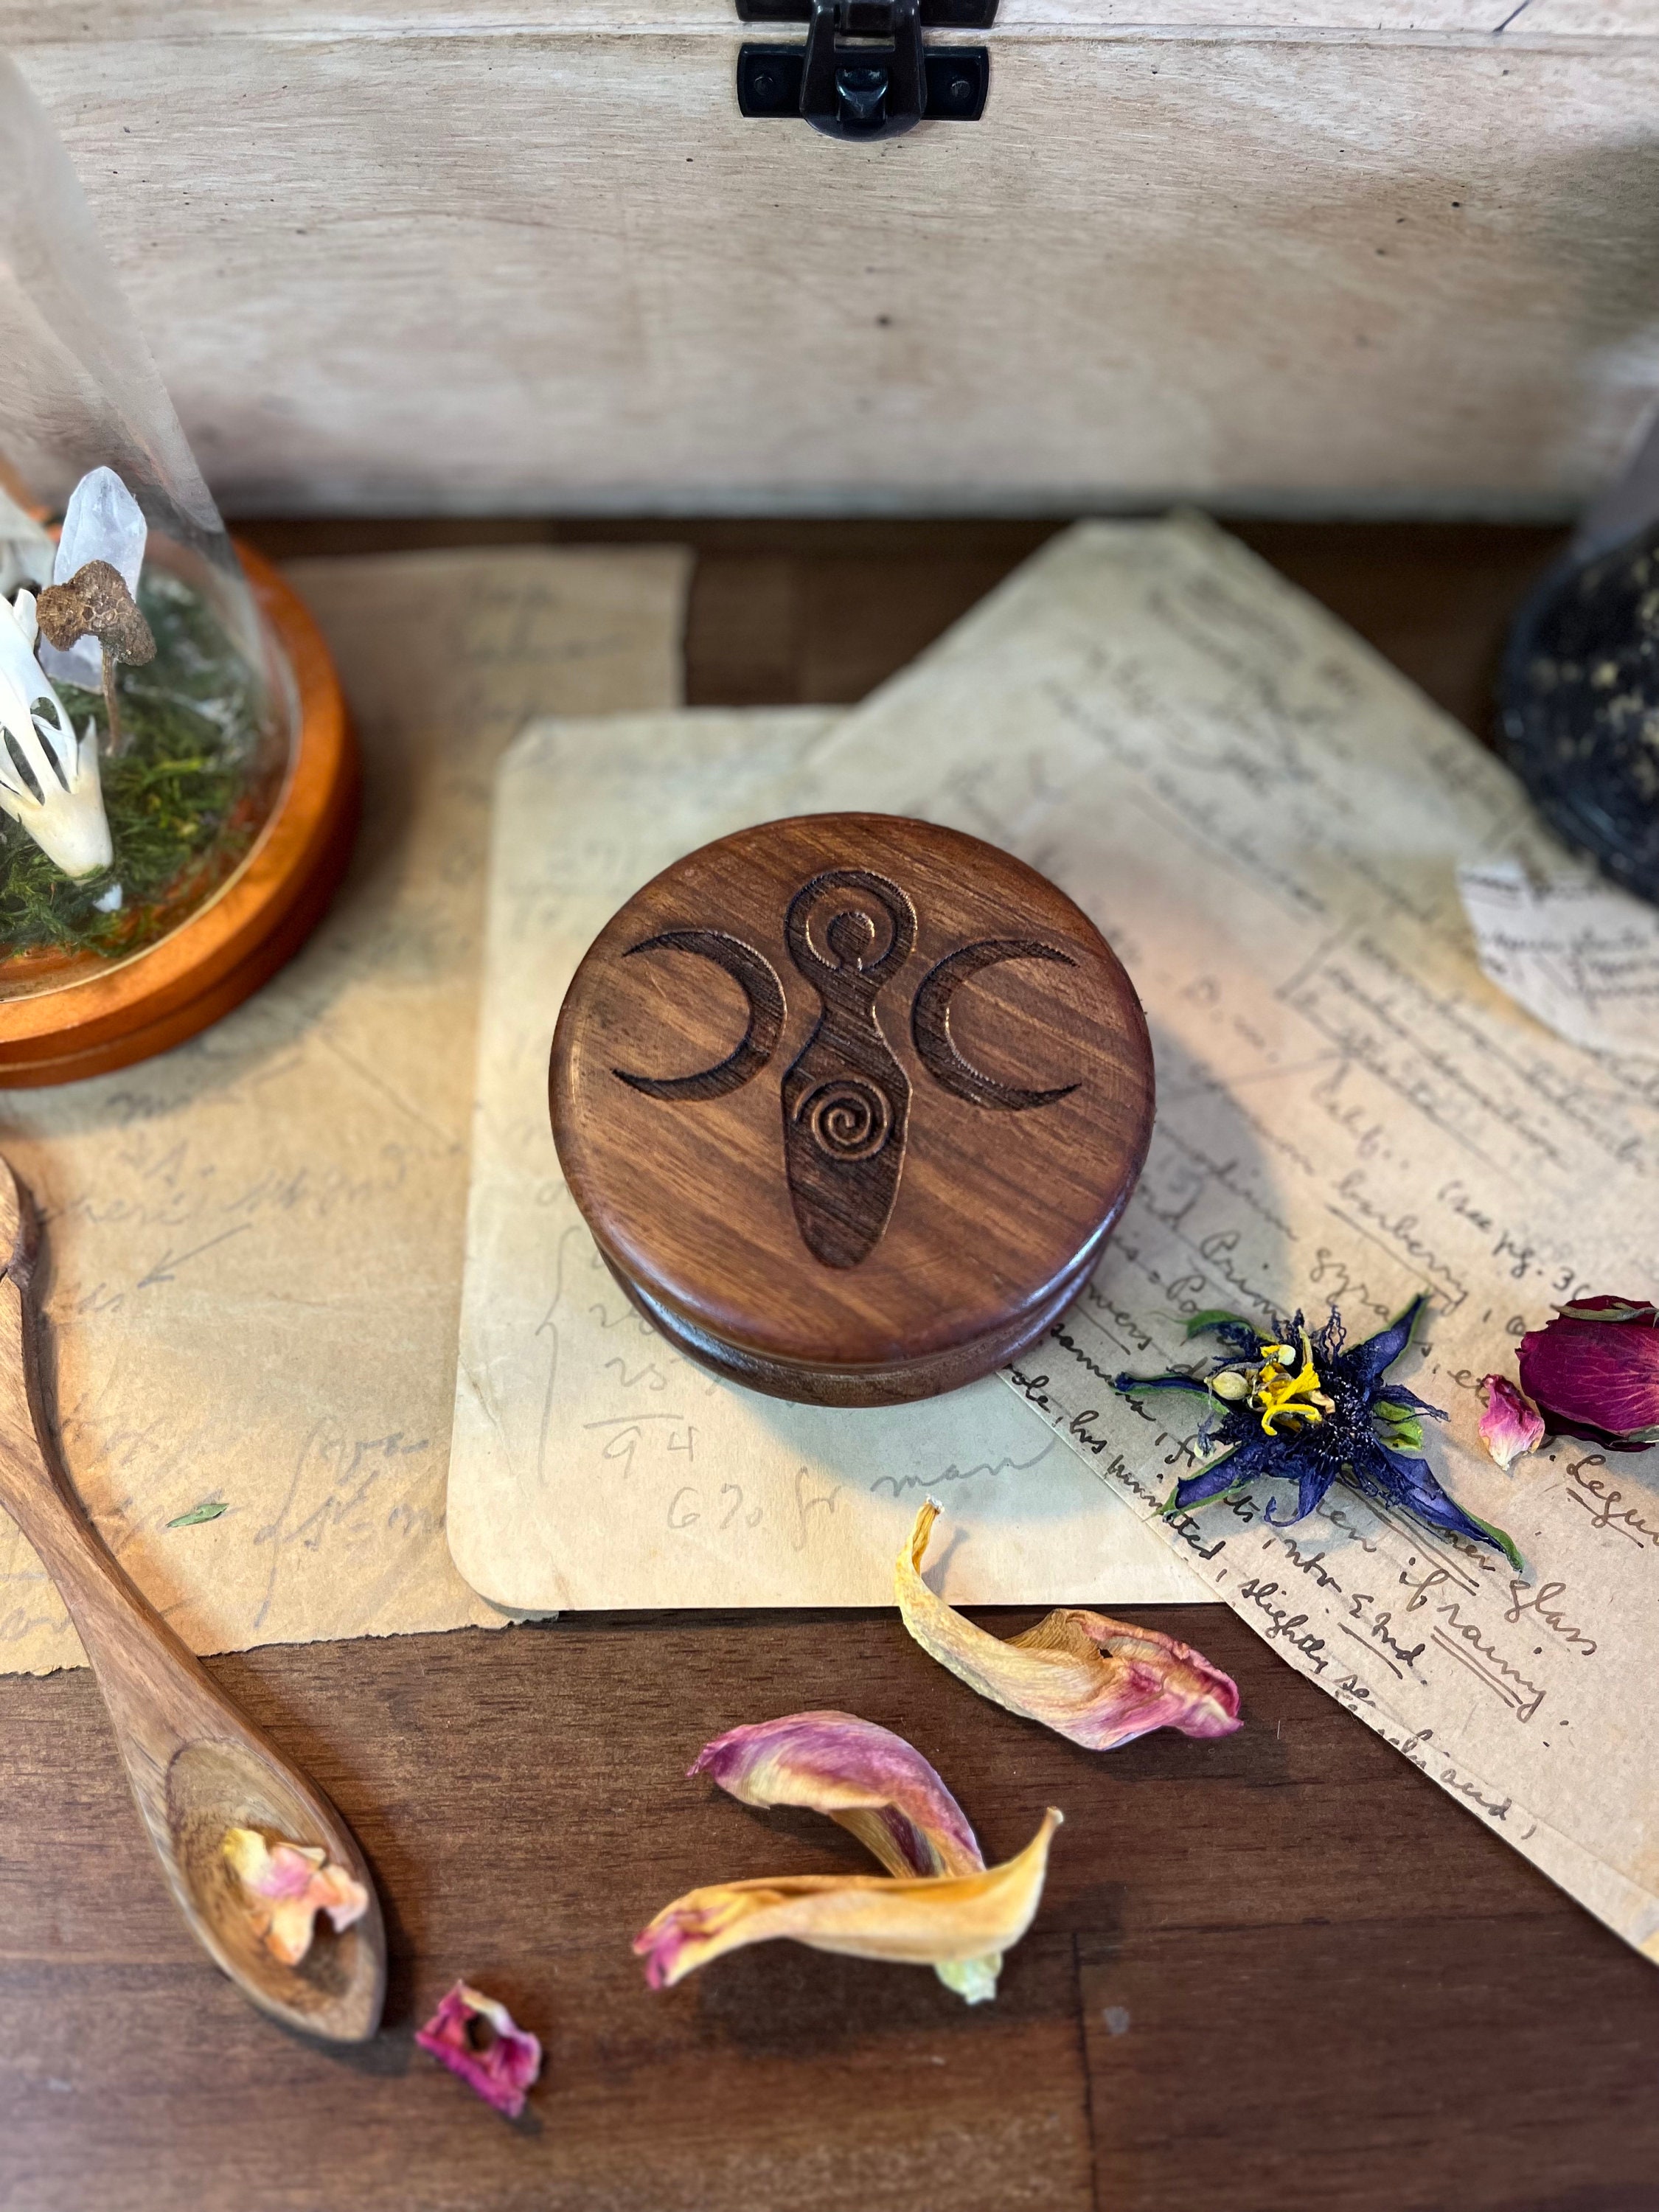 GODDESS HERB GRINDER. Wooden Box for Grinding Herbal Blends. –